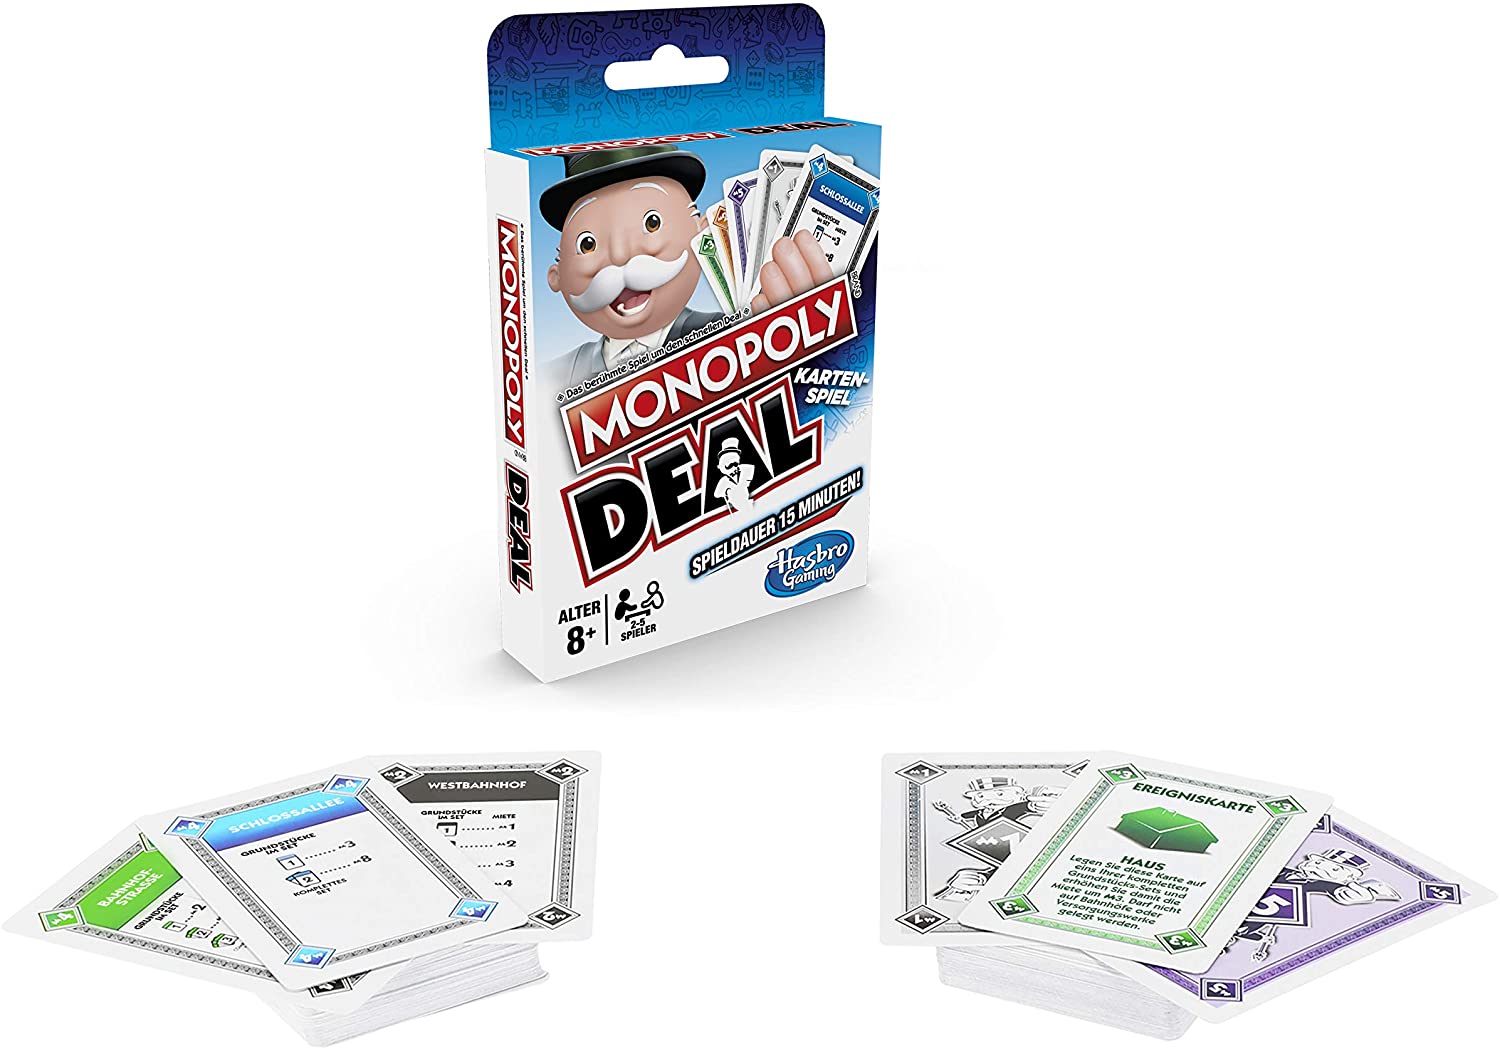 Monopoly Deal, Kartenspiel